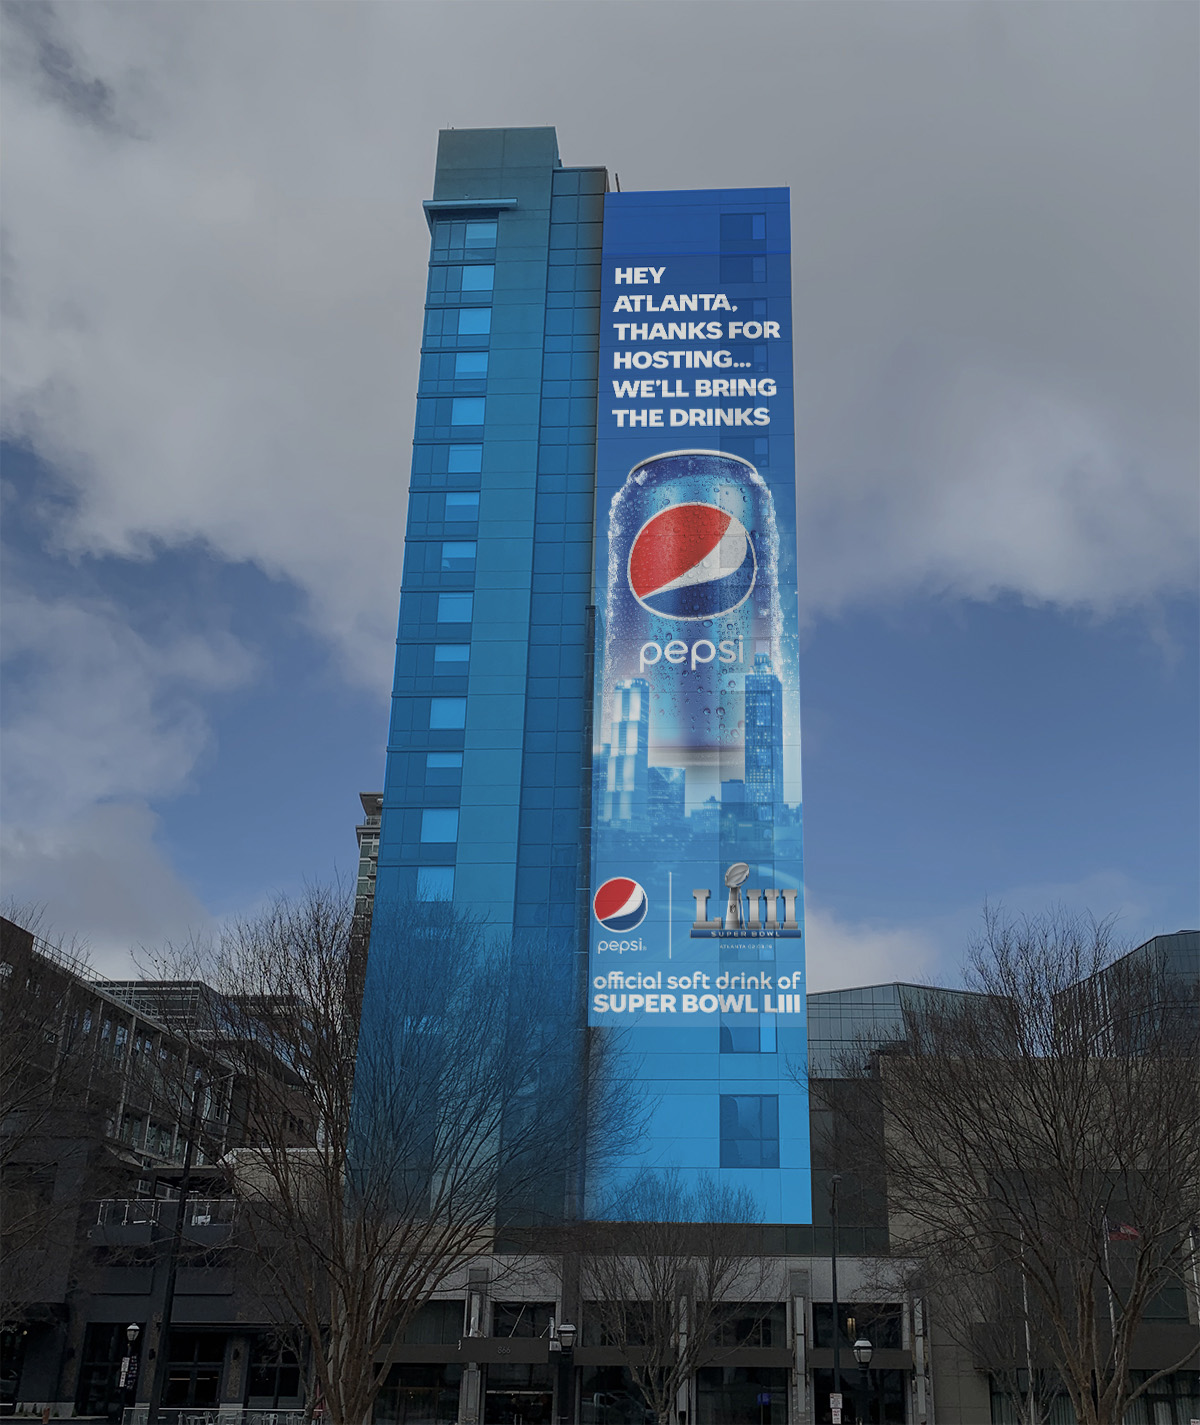 Pepsi advertising throughout Atlanta